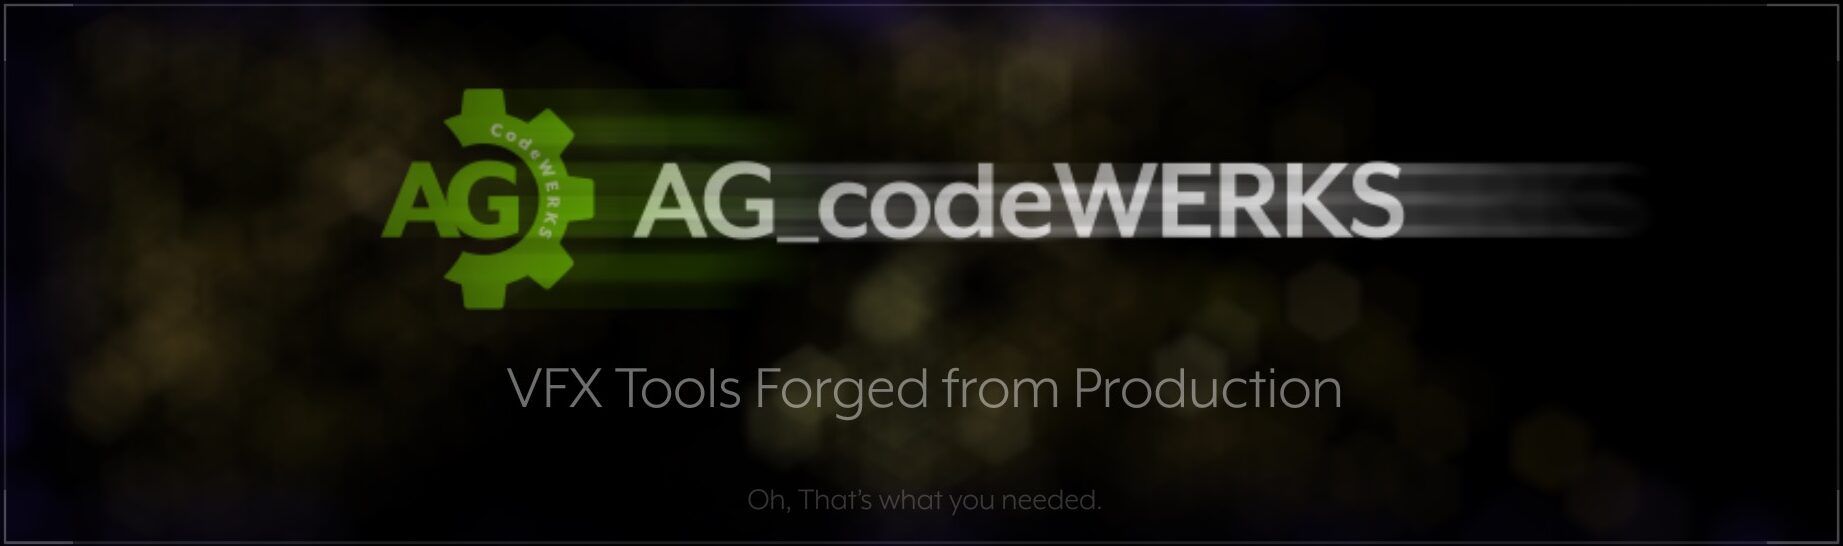 AG_codeWERKS